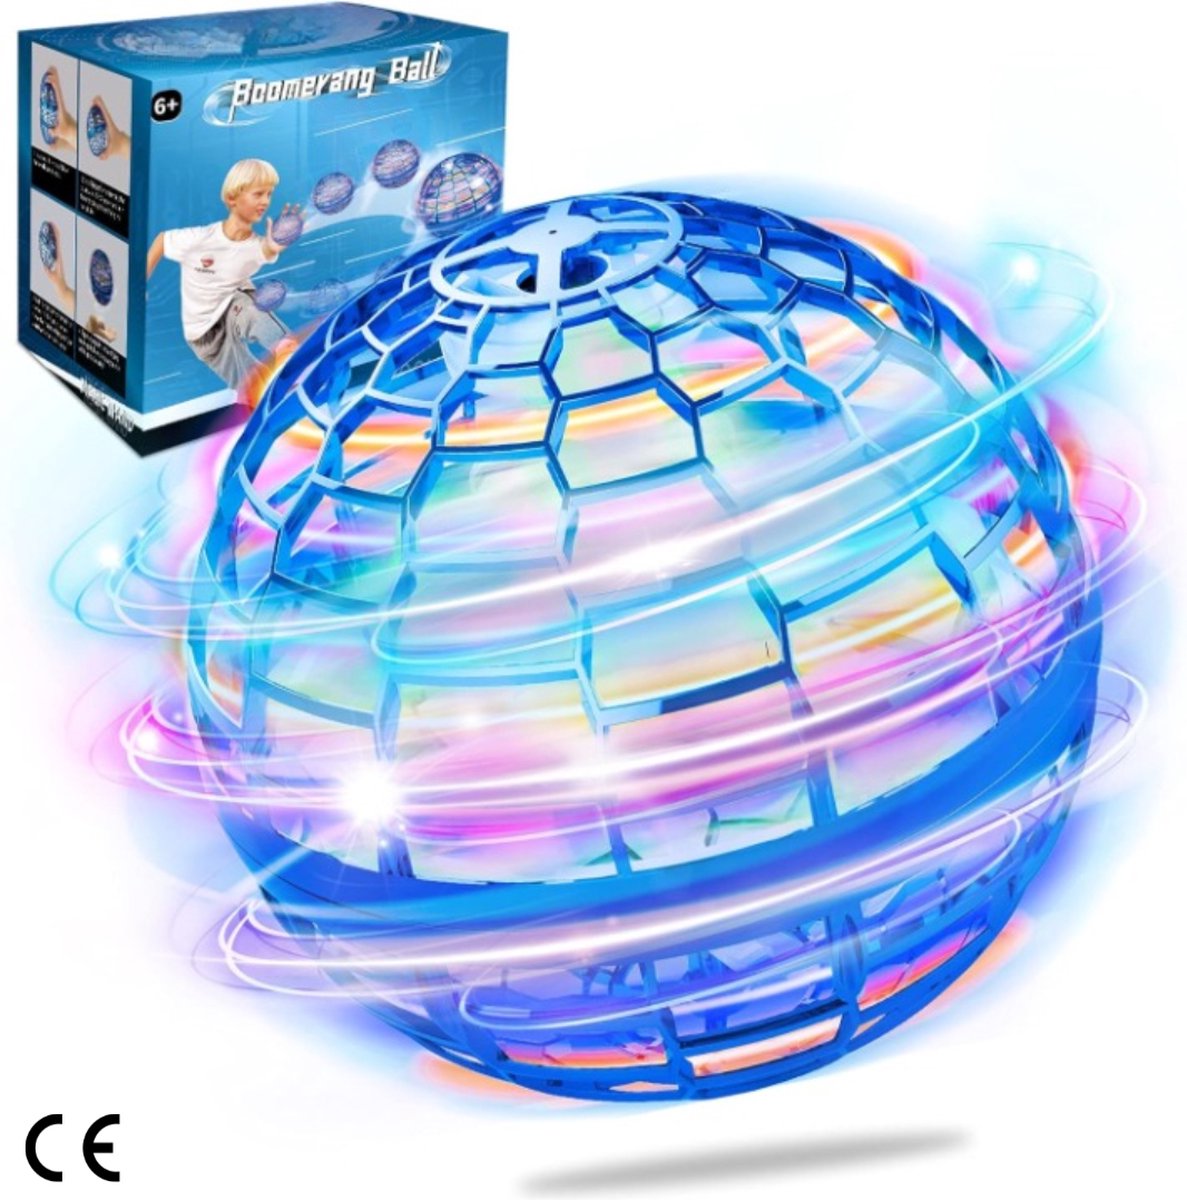 Vliegende Bal Speelgoed met Magische Controller LED-verlichting en 360° Draaibaar Boemerang Bal voor Binnen en Buiten Cool Speelgoed voor Kinderen en Volwassenen